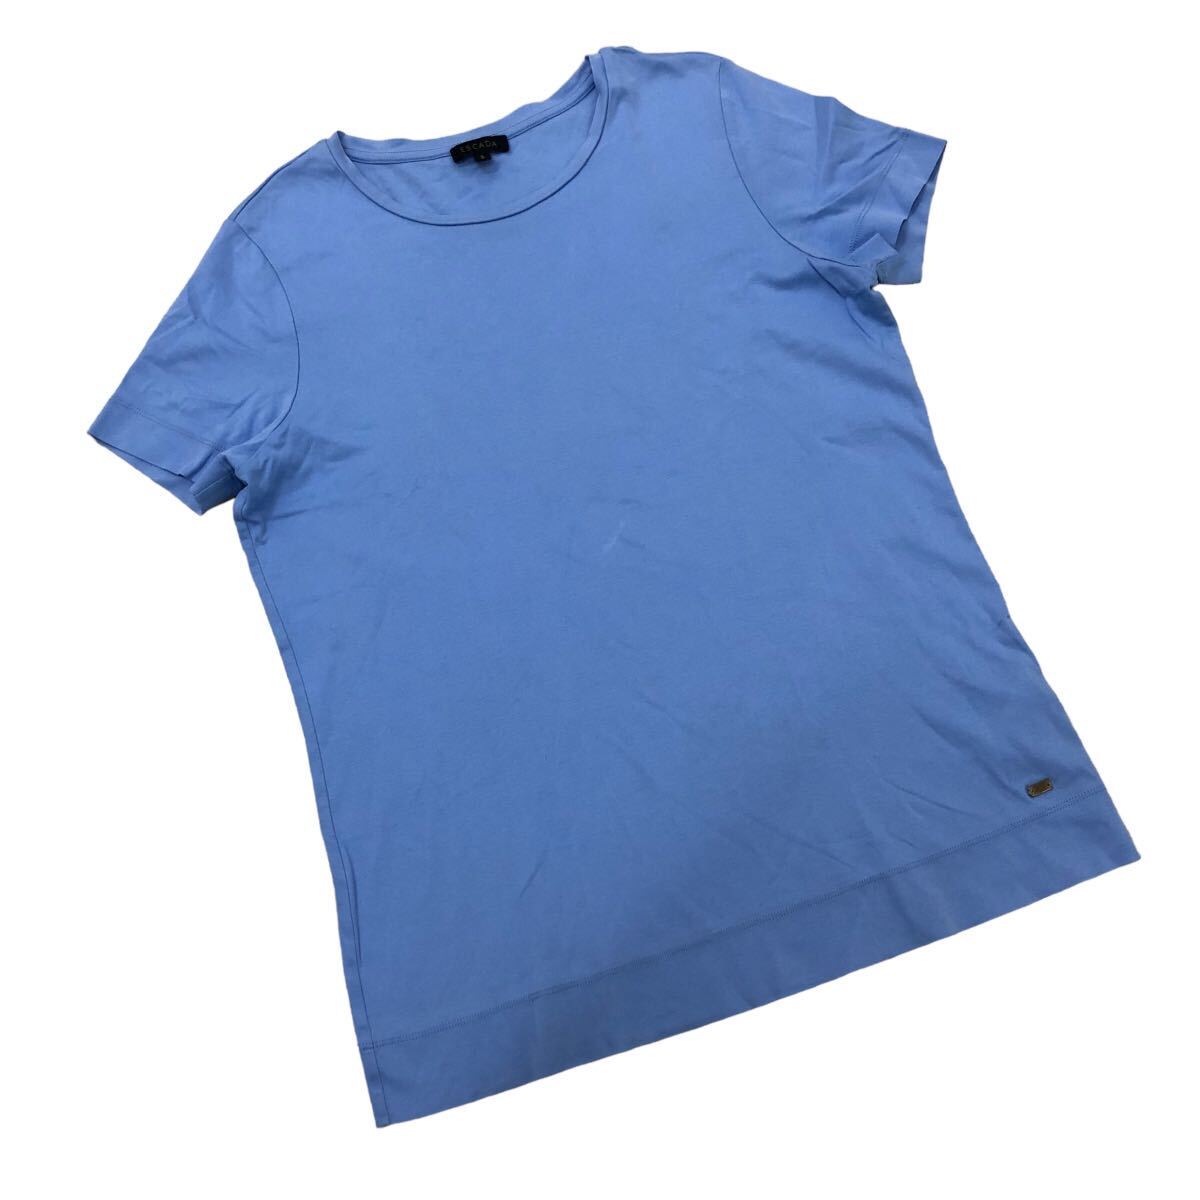 NB212-24 ESCADA エスカーダ 半袖 Tシャツ シャツ カットソー トップス コットン 100% ライトブルー 水色 レディース S_画像7